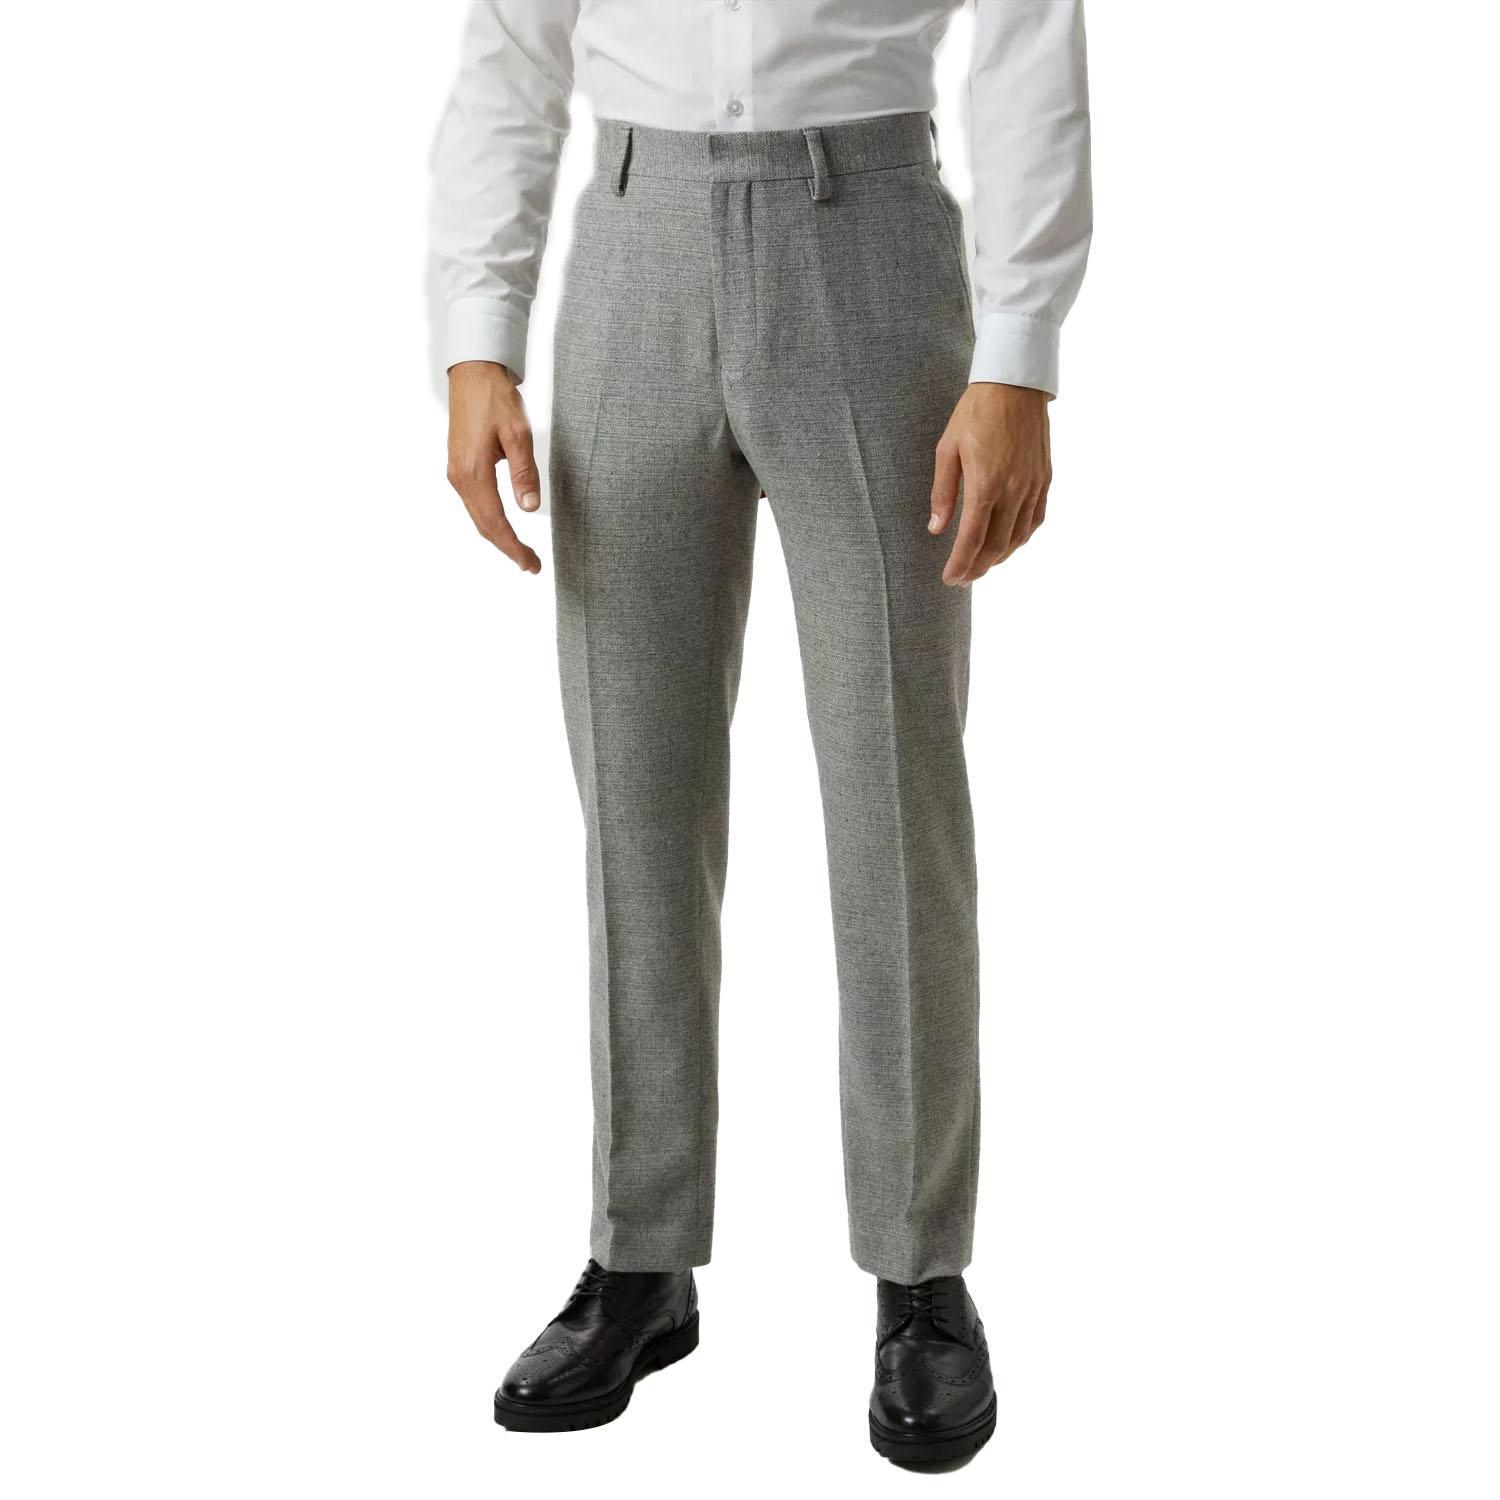 Burton Mens Tweed Crosshatch Slim Suit Trousers (Grey) (34R)